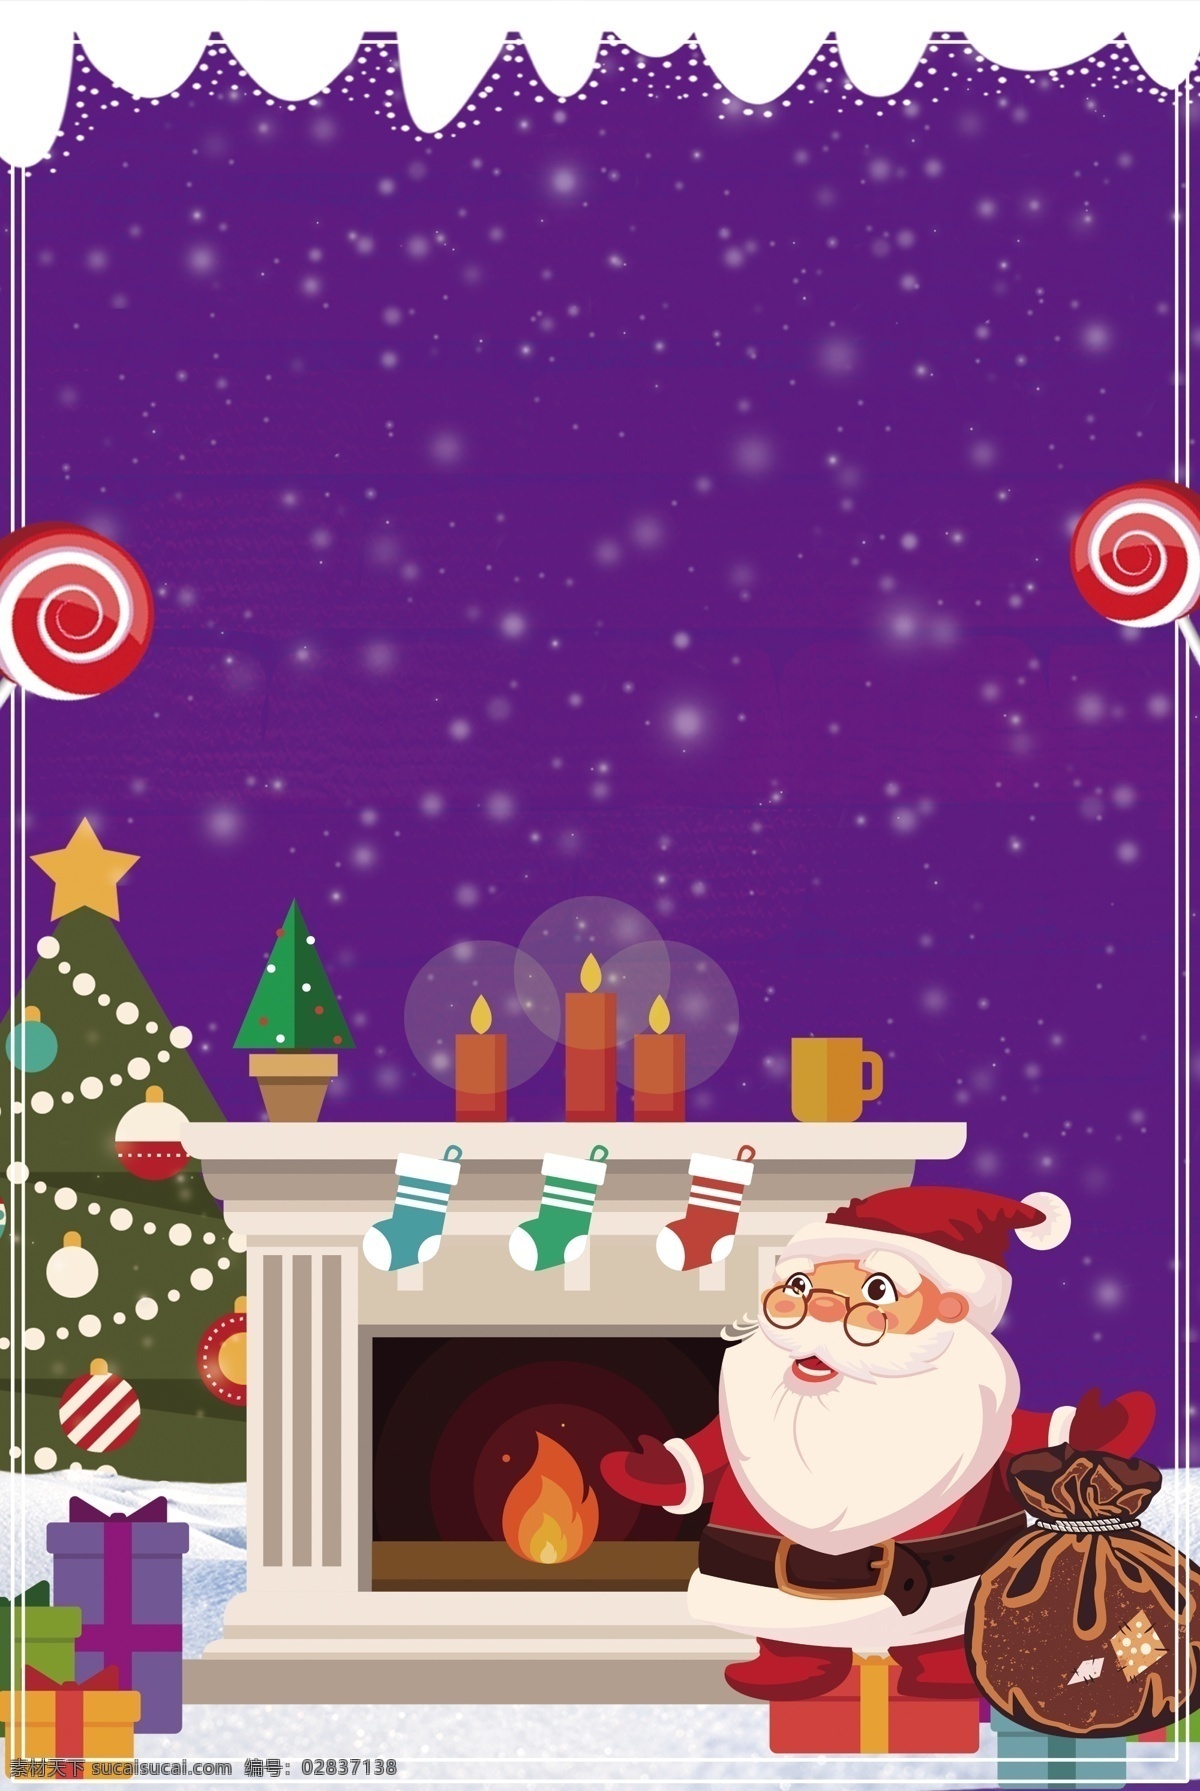 紫色 卡通 圣诞节 狂欢 海报 背景 图 冬季 边框 圣诞树 礼盒 圣诞节快乐 平安夜 圣诞礼物 棒棒糖 糖果 广告背景